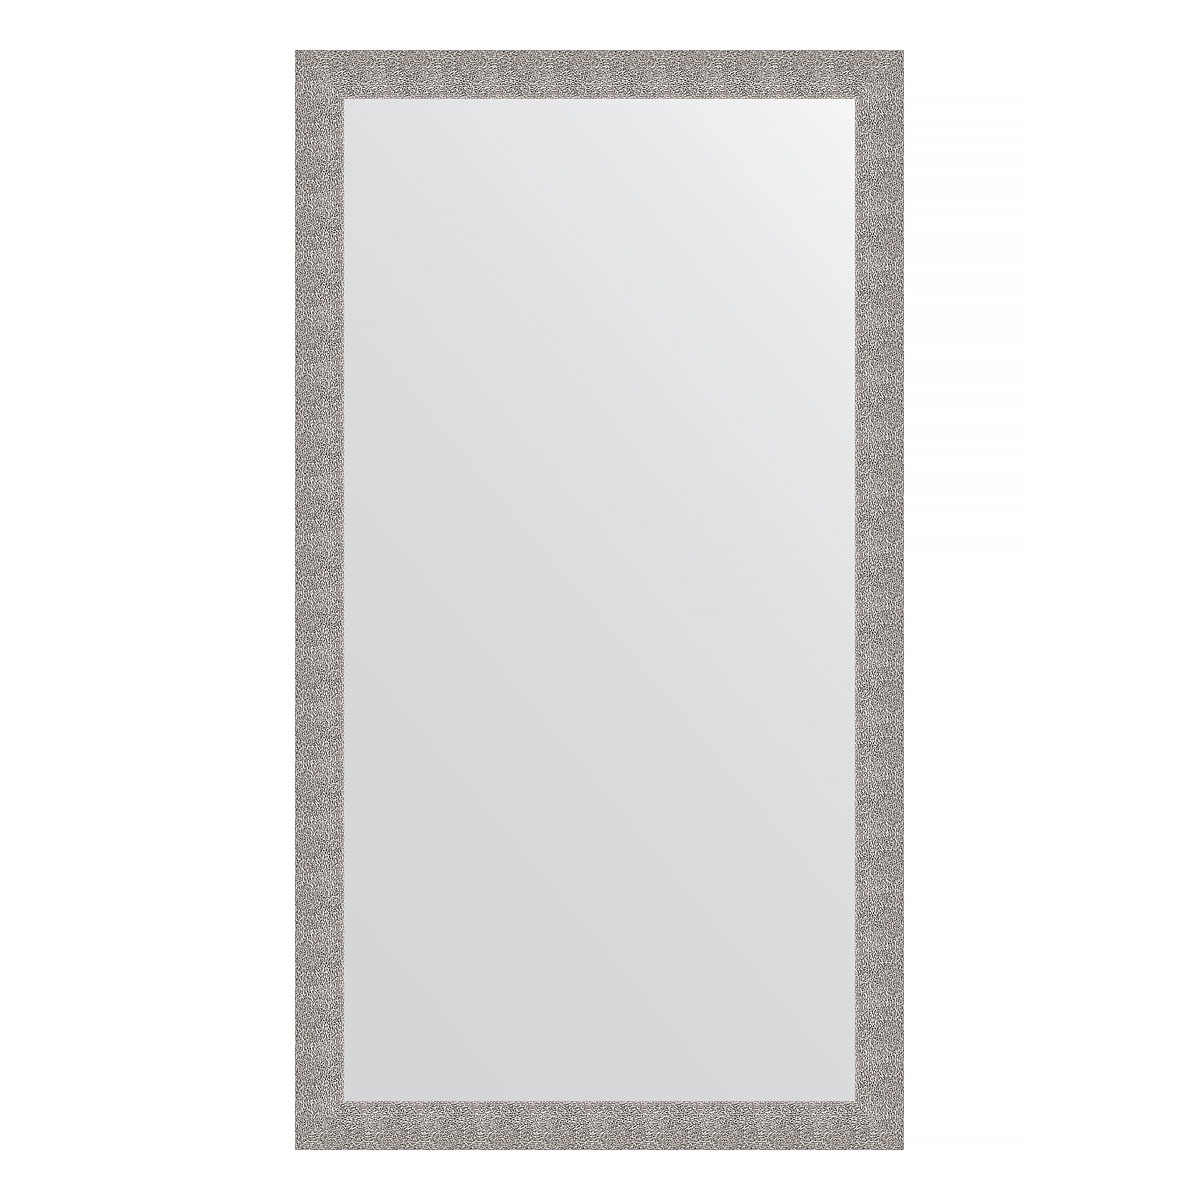 Зеркало напольное в багетной раме Evoform чеканка серебряная 90 мм 111x201 см зеркало 51х141 см чеканка белая evoform definite by 3098